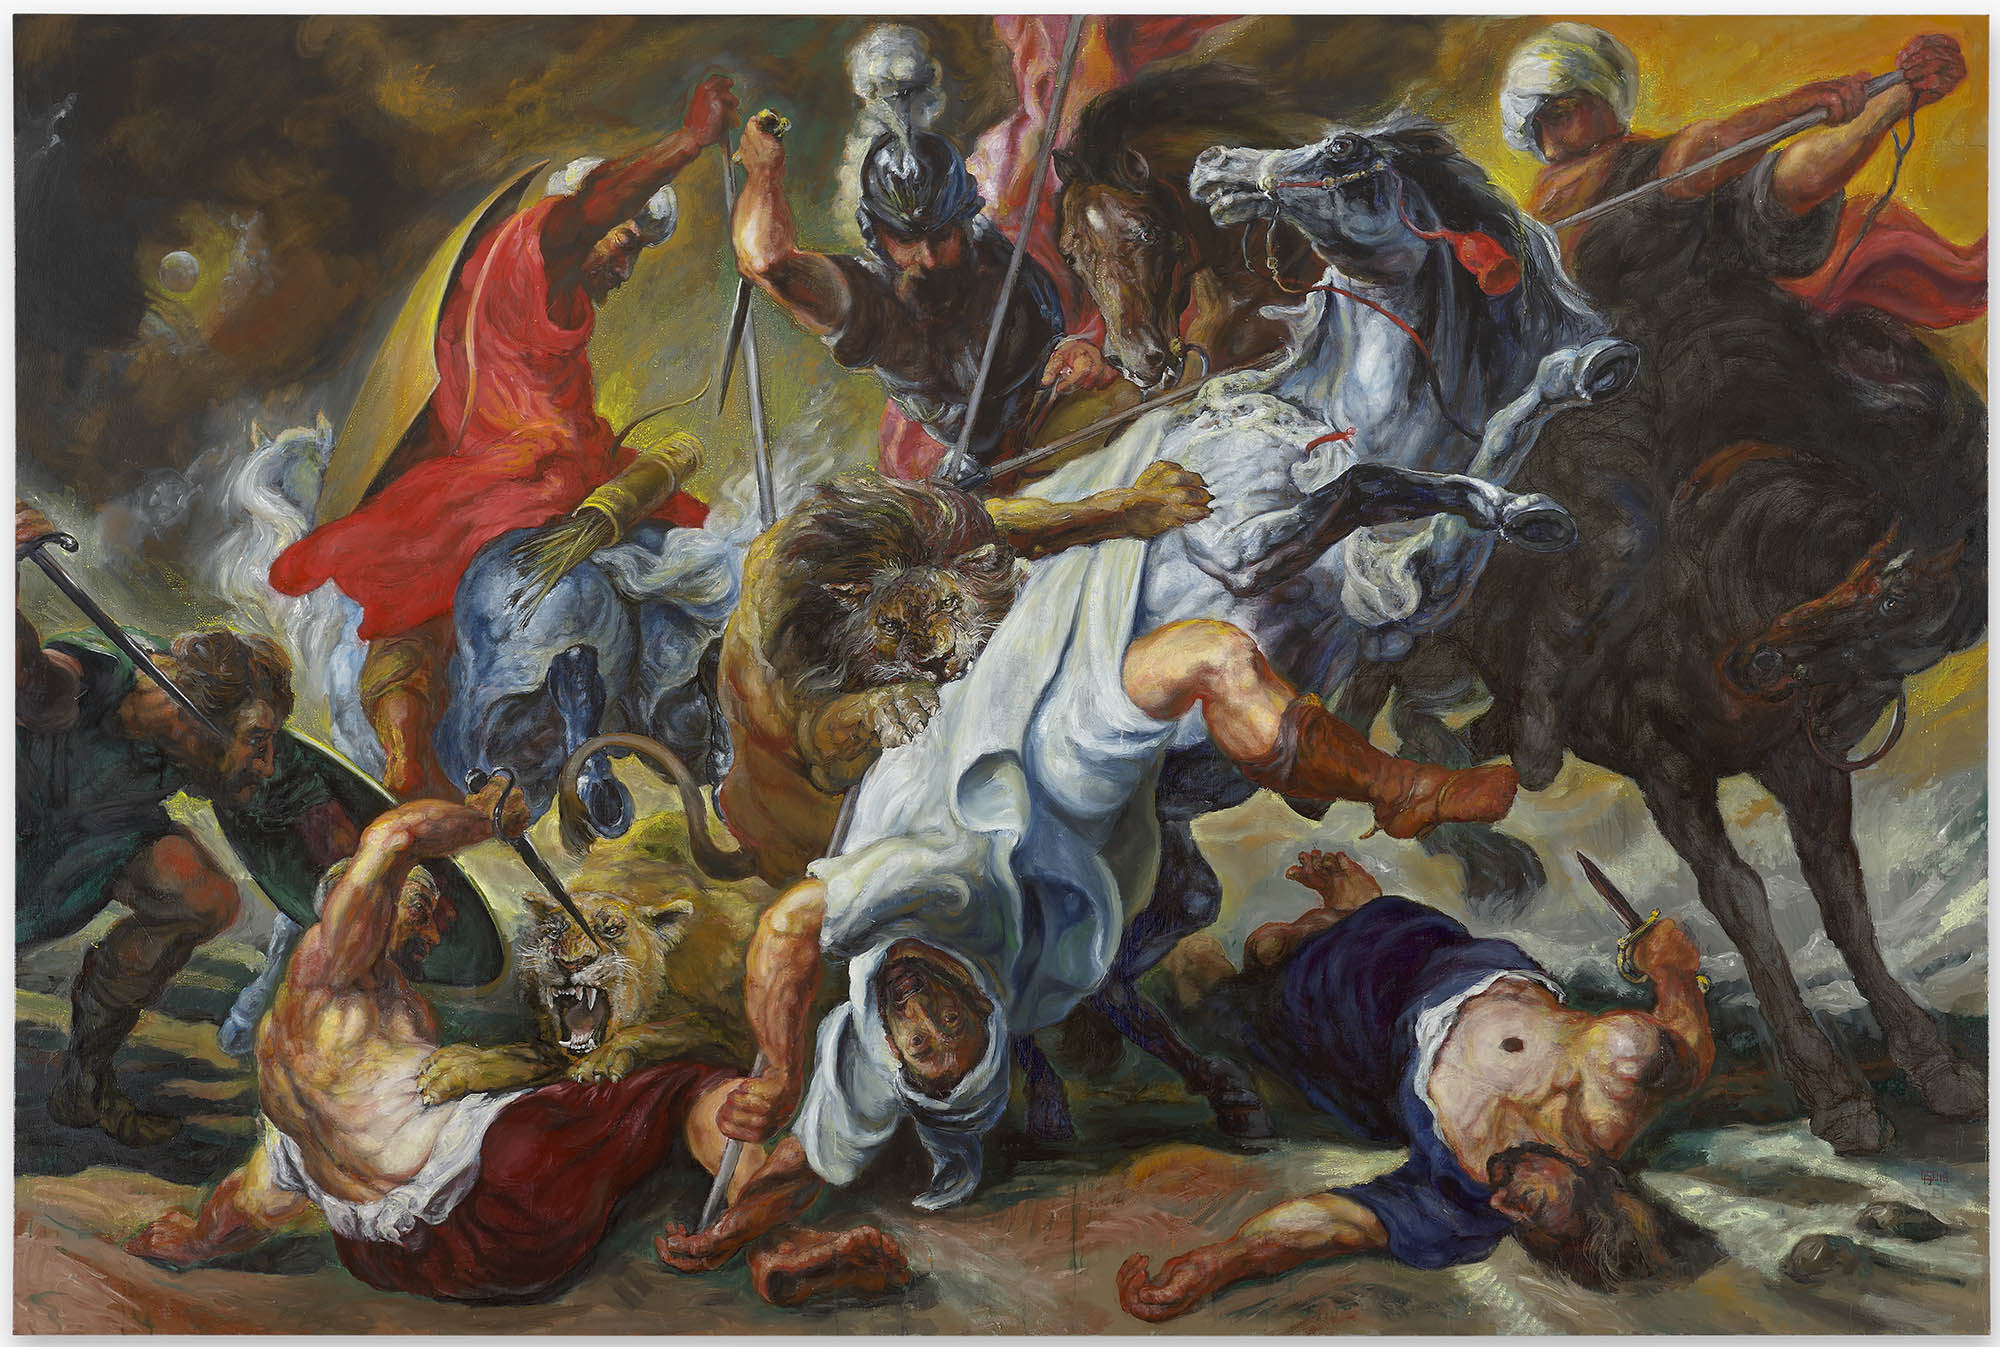 Fré Ilgen, Fré Ilgen, “No Quarter”, Oil on canvas, H200 x L300 cm, 2018